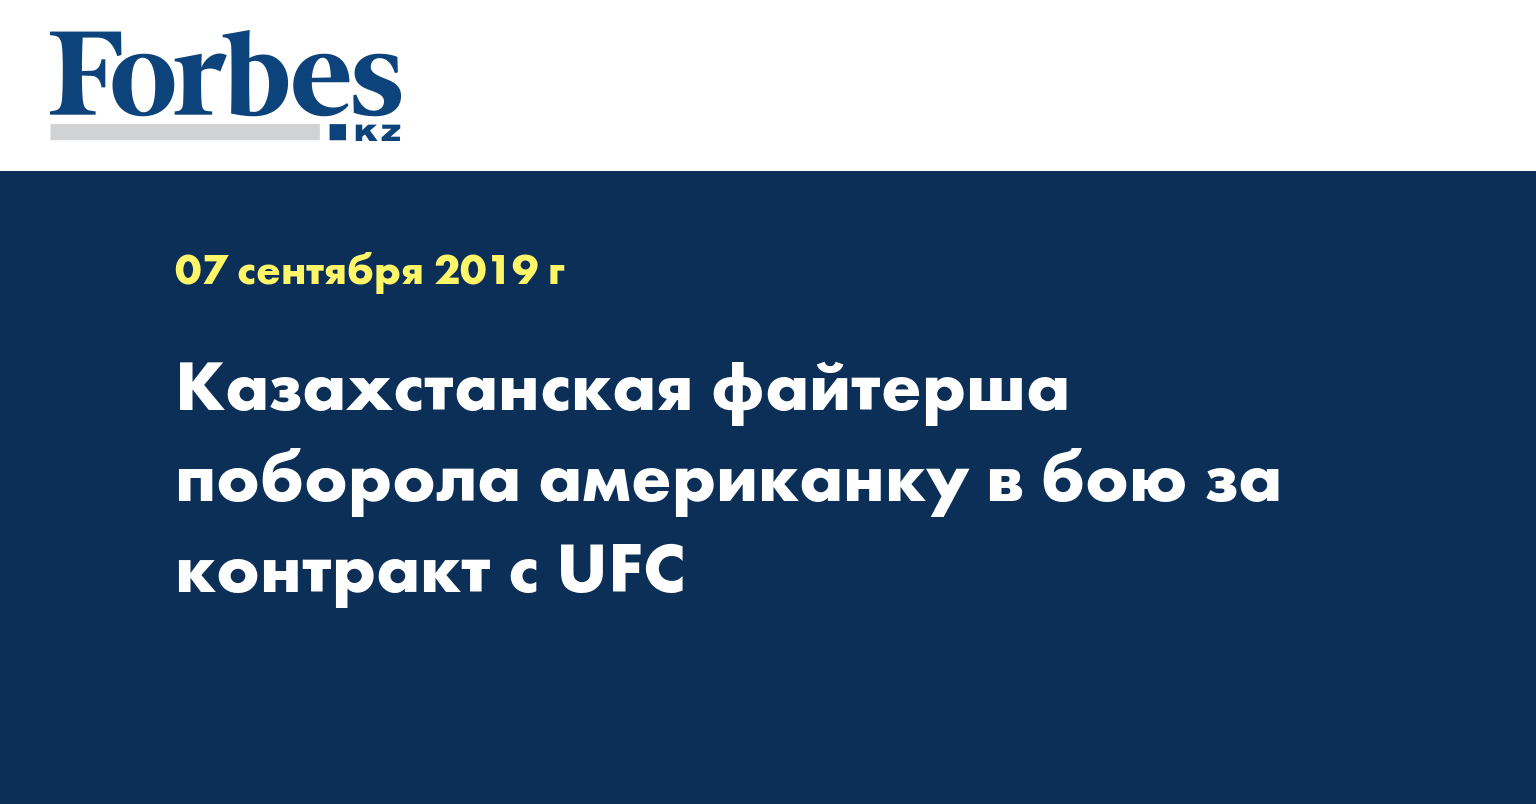 Казахстанская файтерша поборола американку в бою за контракт с UFC 